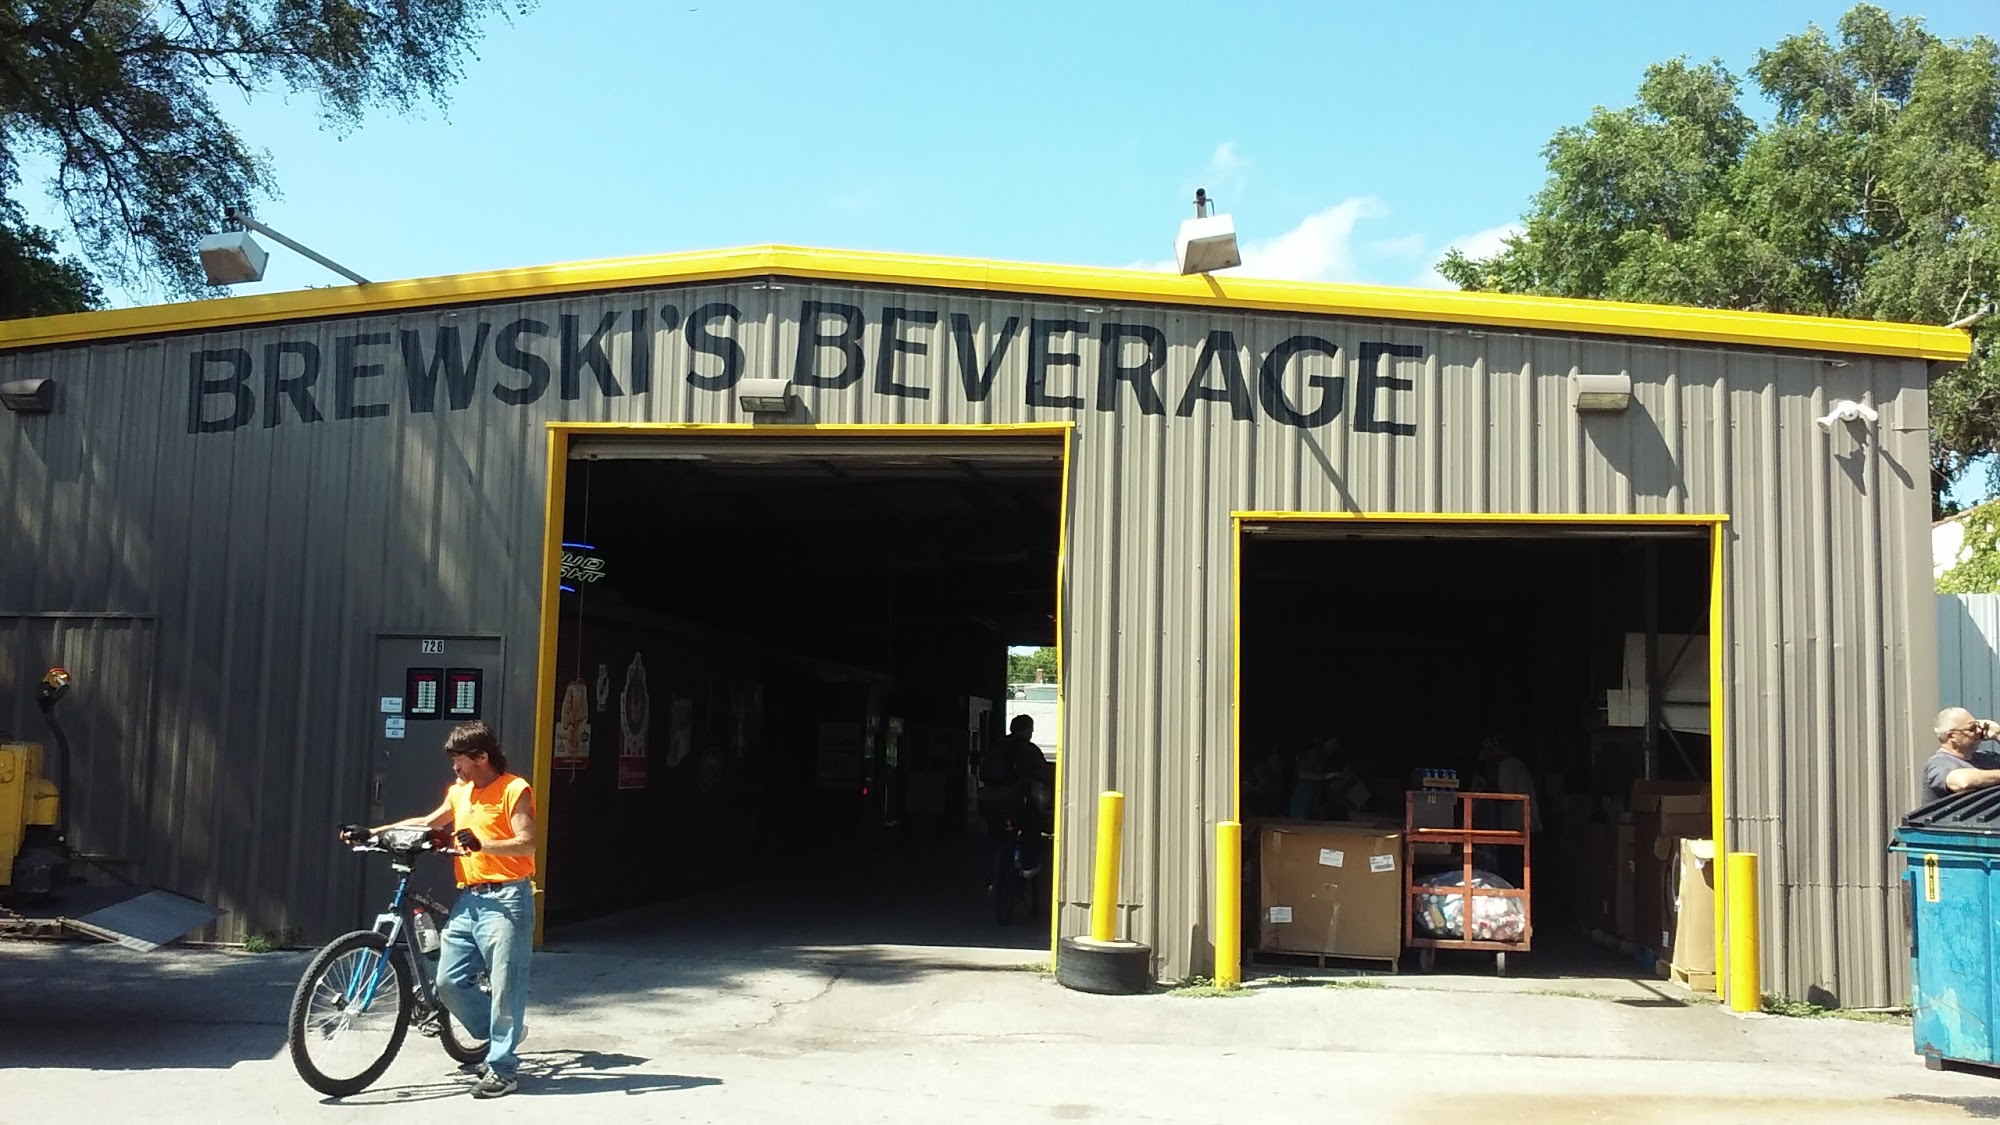 Brewski's Beverage and Redemption center